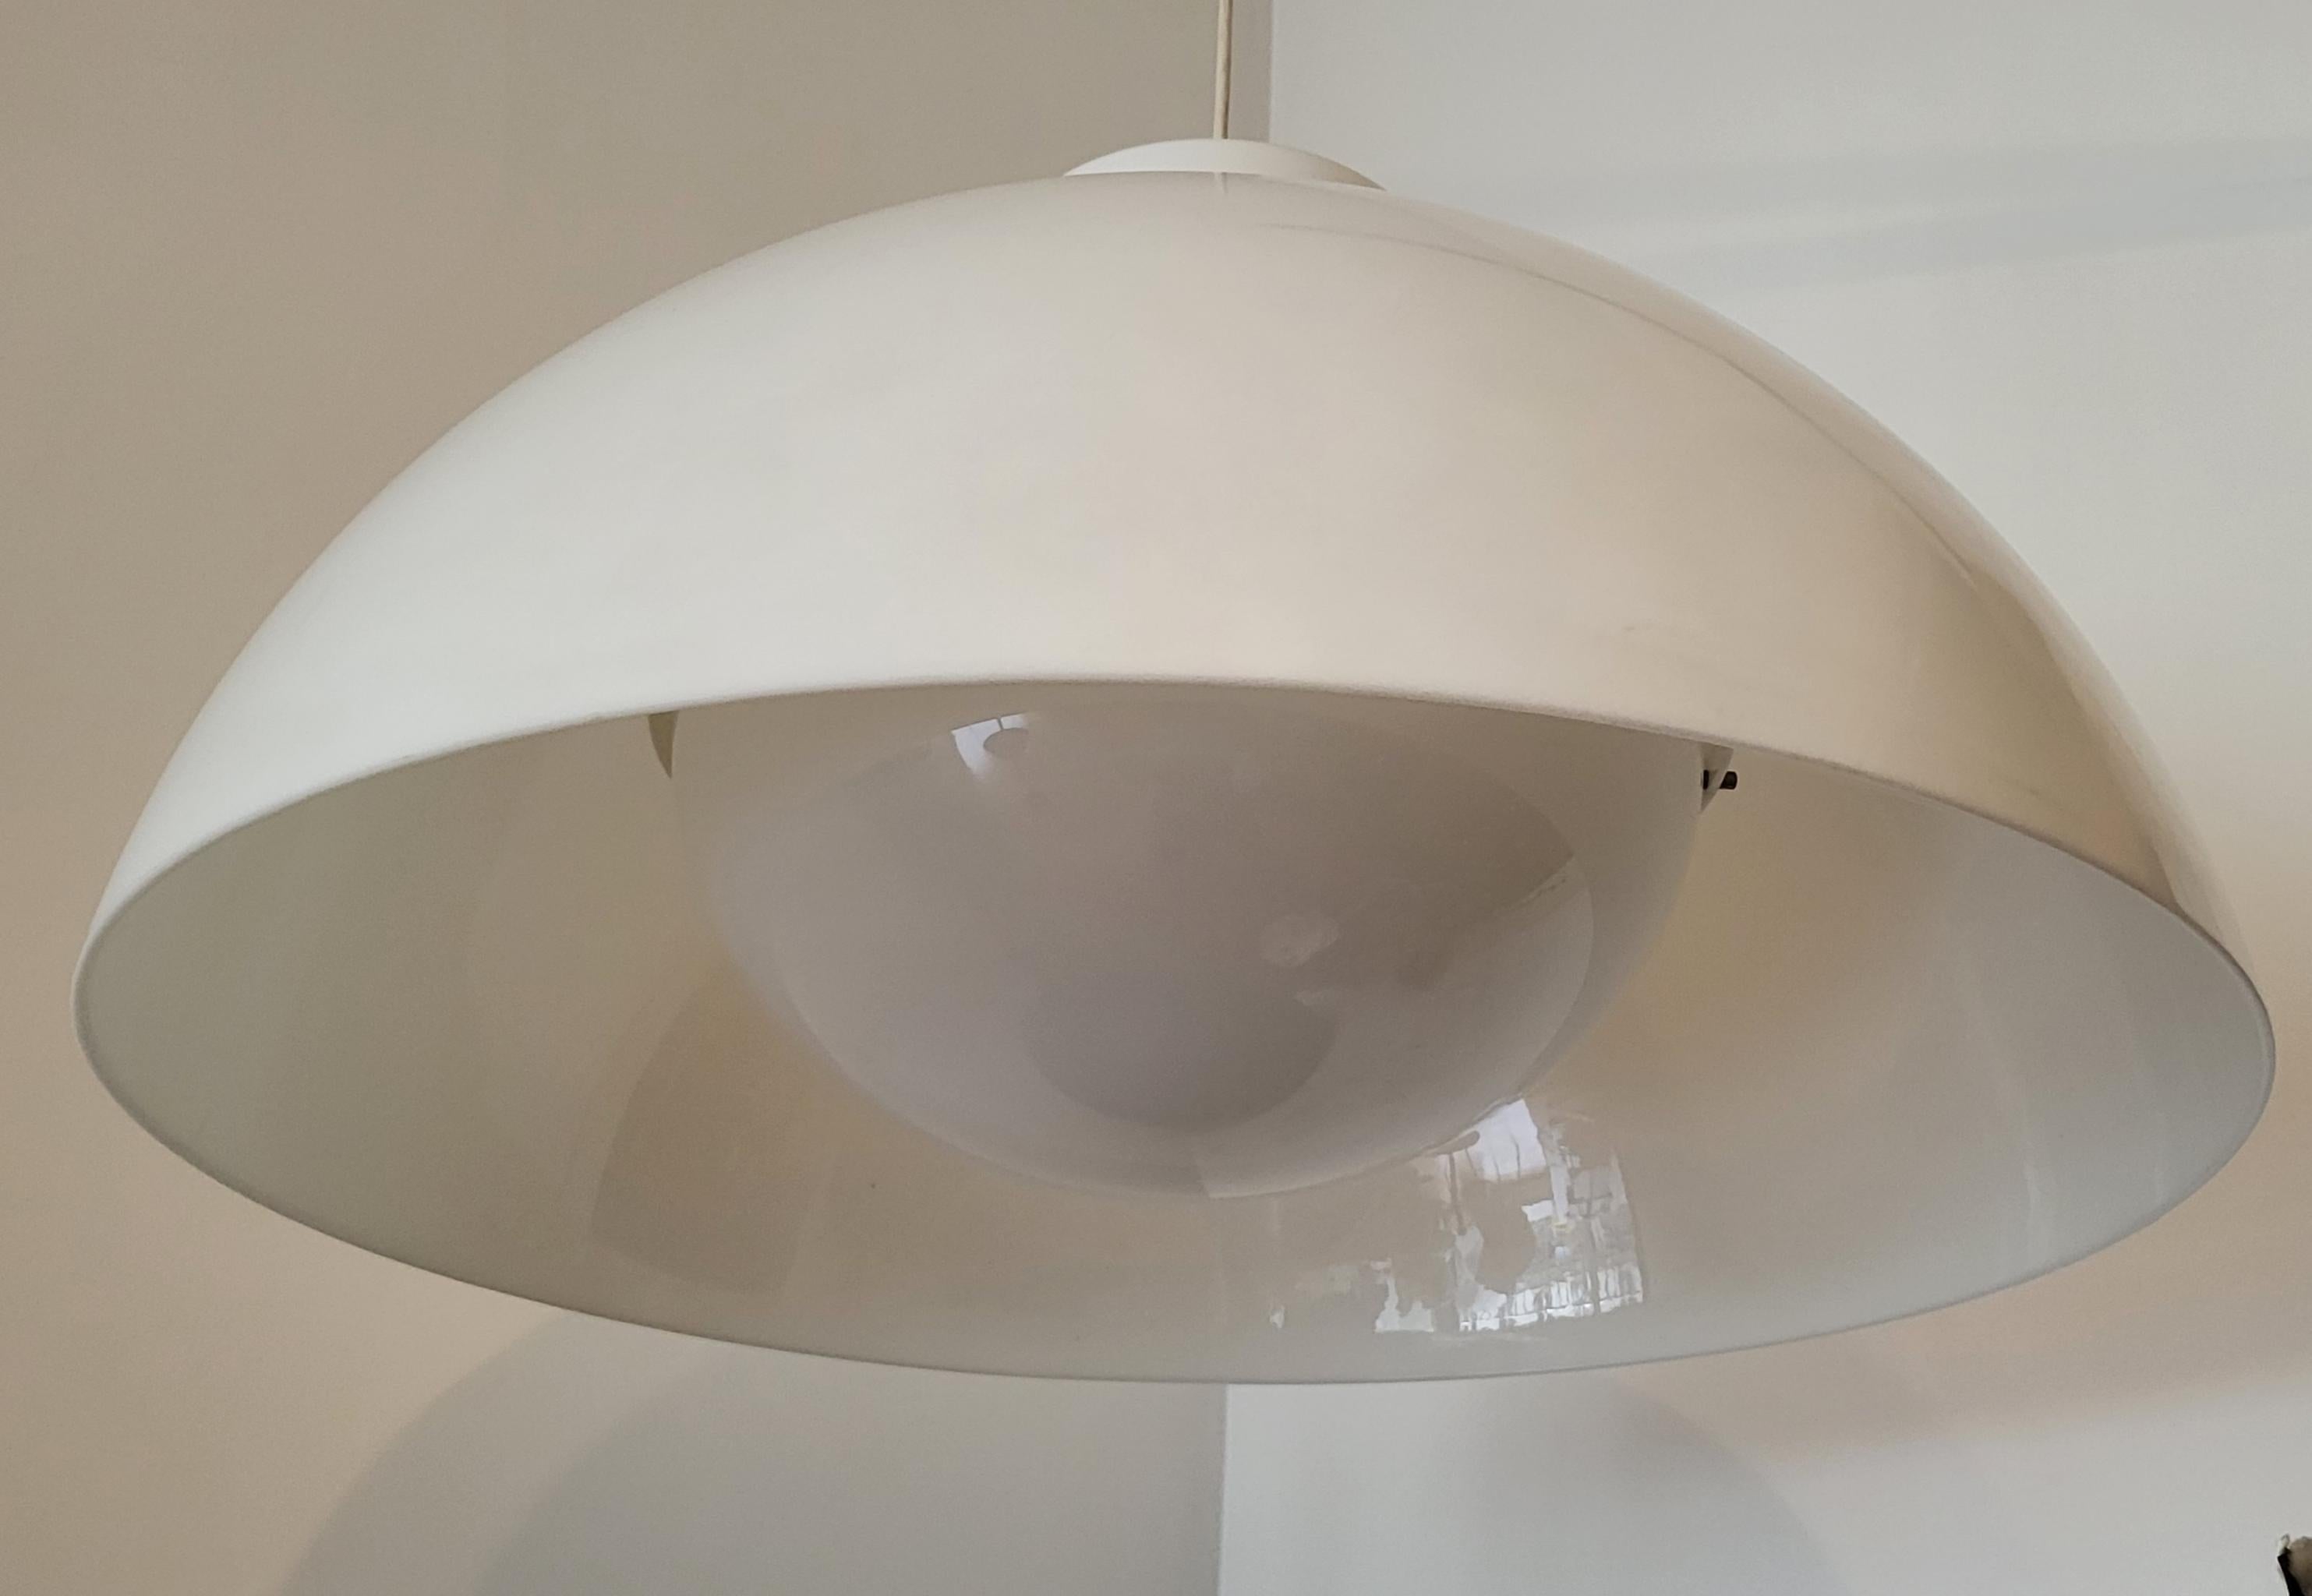 Très rare sur le marché , suspension de taille XXL 62 cm de diamètre, conçue par les designers de renommée mondiale, Achille et Pier Castiglioni et Fabrique par Kartell dans les années 1950. L'abat jour est en méthacrylate blanc.
Le lustre est